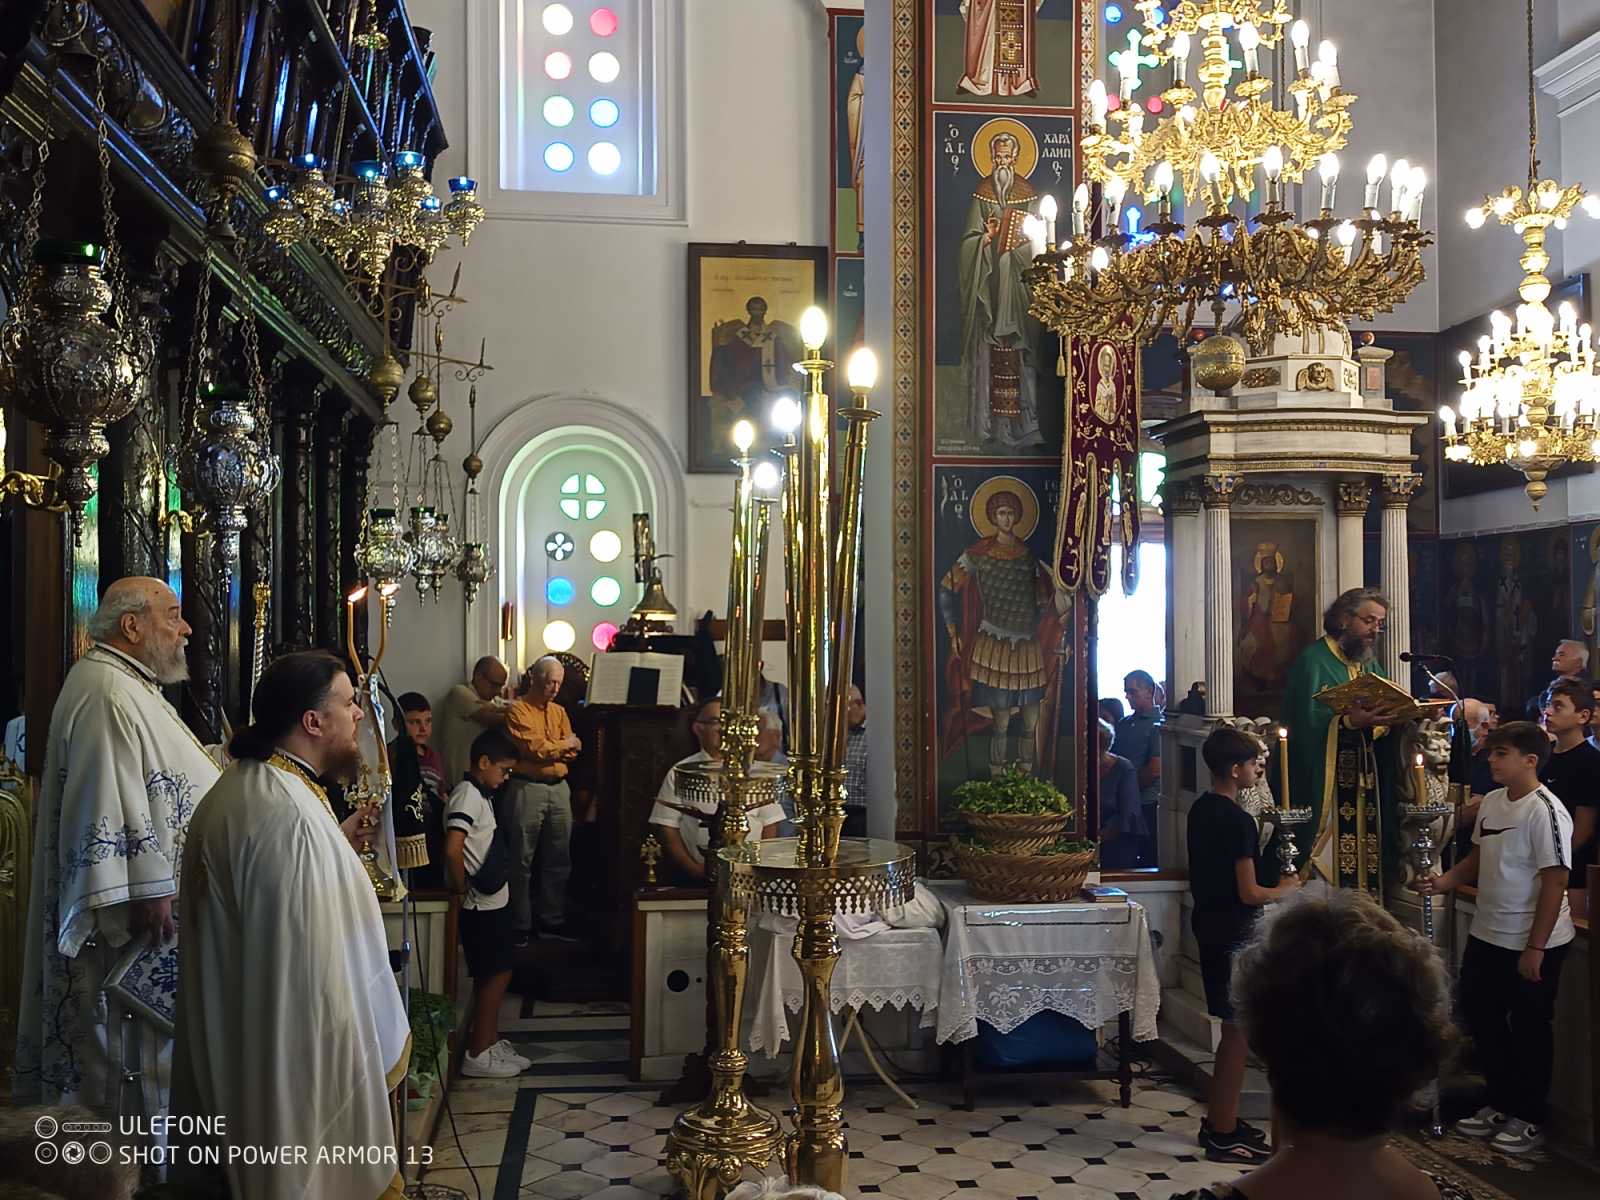 Εύβοια: Έτσι γιόρτασαν τη γιορτή του Τιμίου Σταυρού στην Κάρυστο